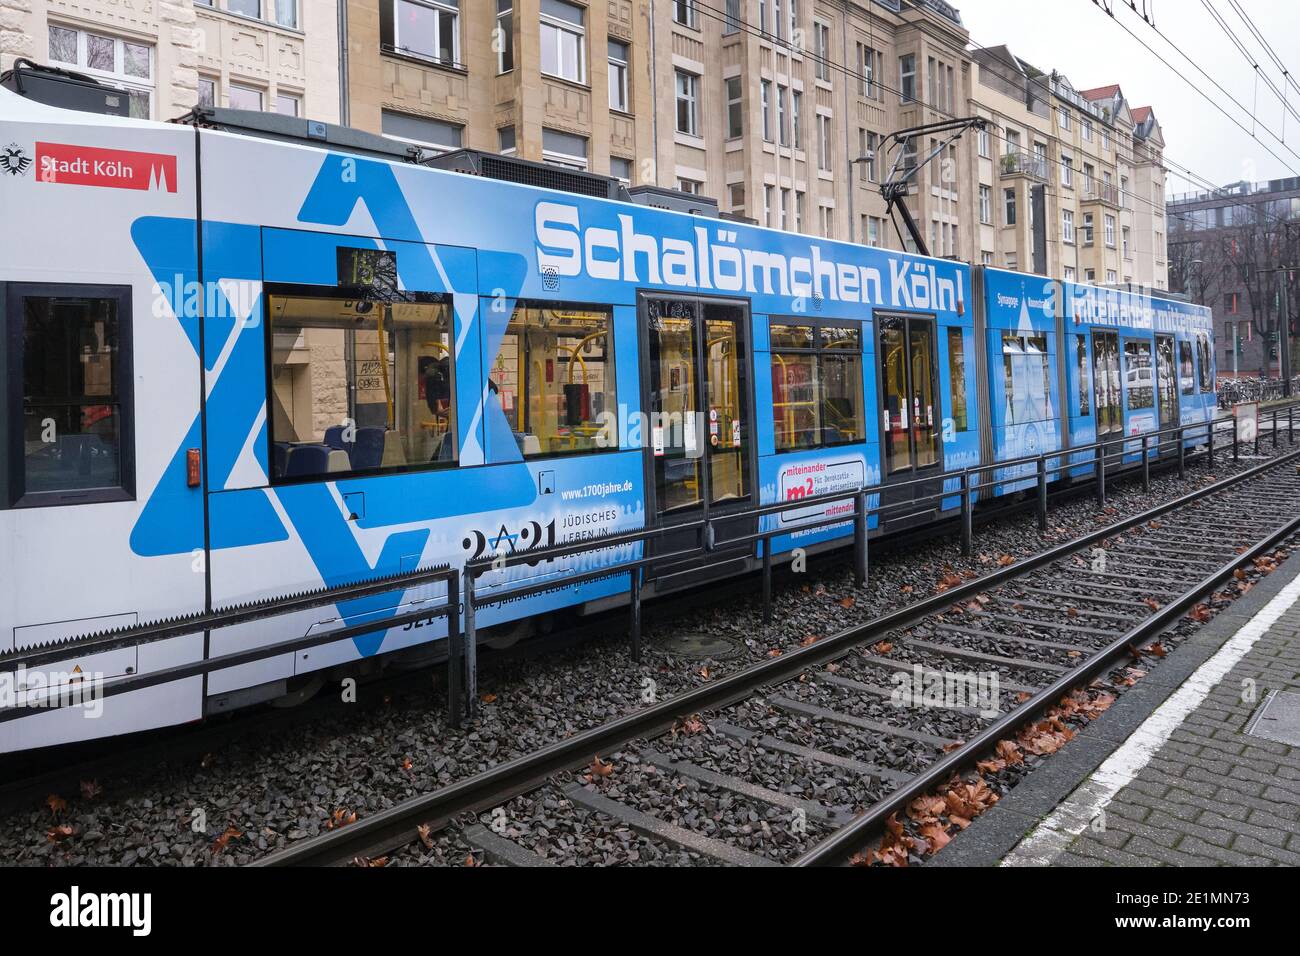 Mit einem speziell gestalteten Zug setzen die Stadt Köln, die Synagogengemeinde und der öffentliche Nahverkehr ein Zeichen für Demokratie Stockfoto